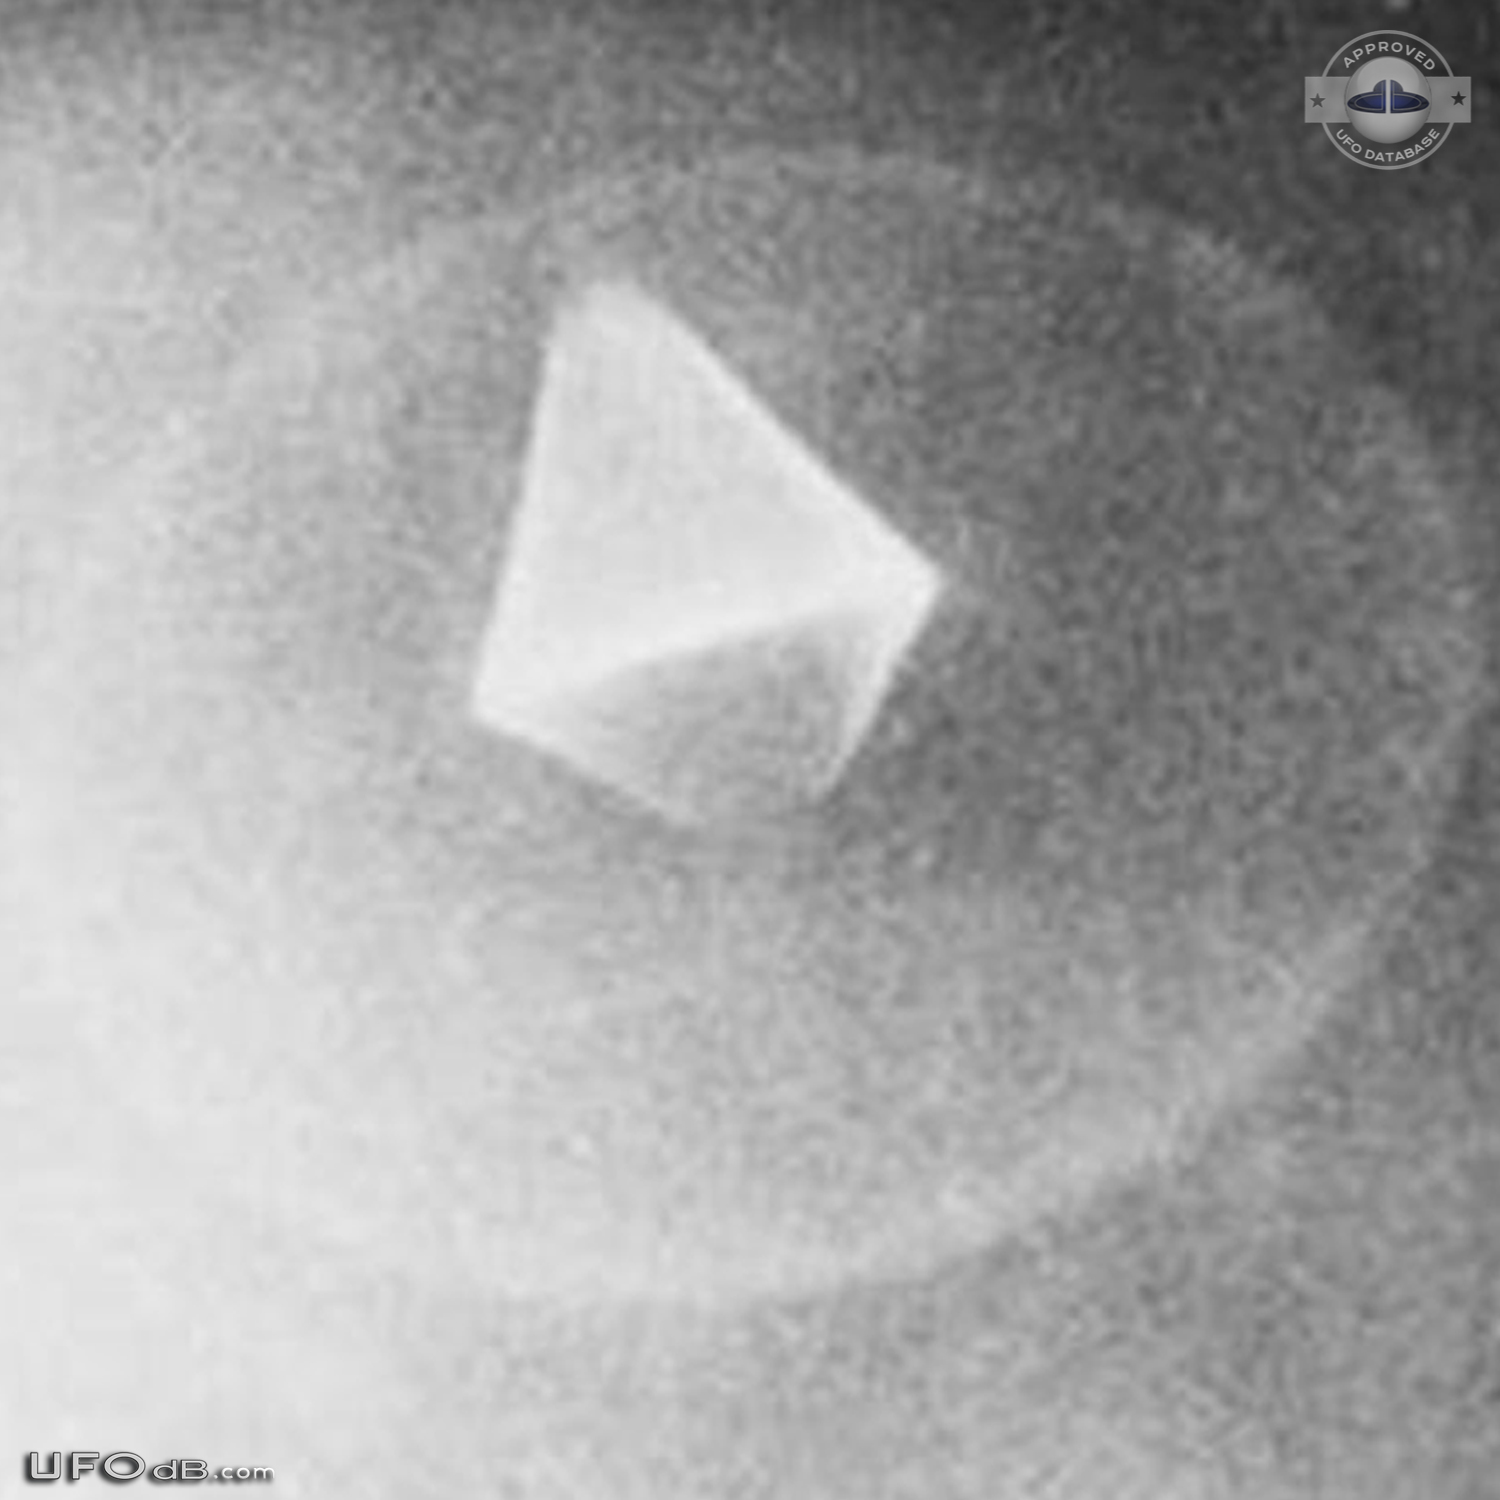 CIA Declassified UFO picture of 1968 in Maimi, Florida USA UFO Picture #630-4